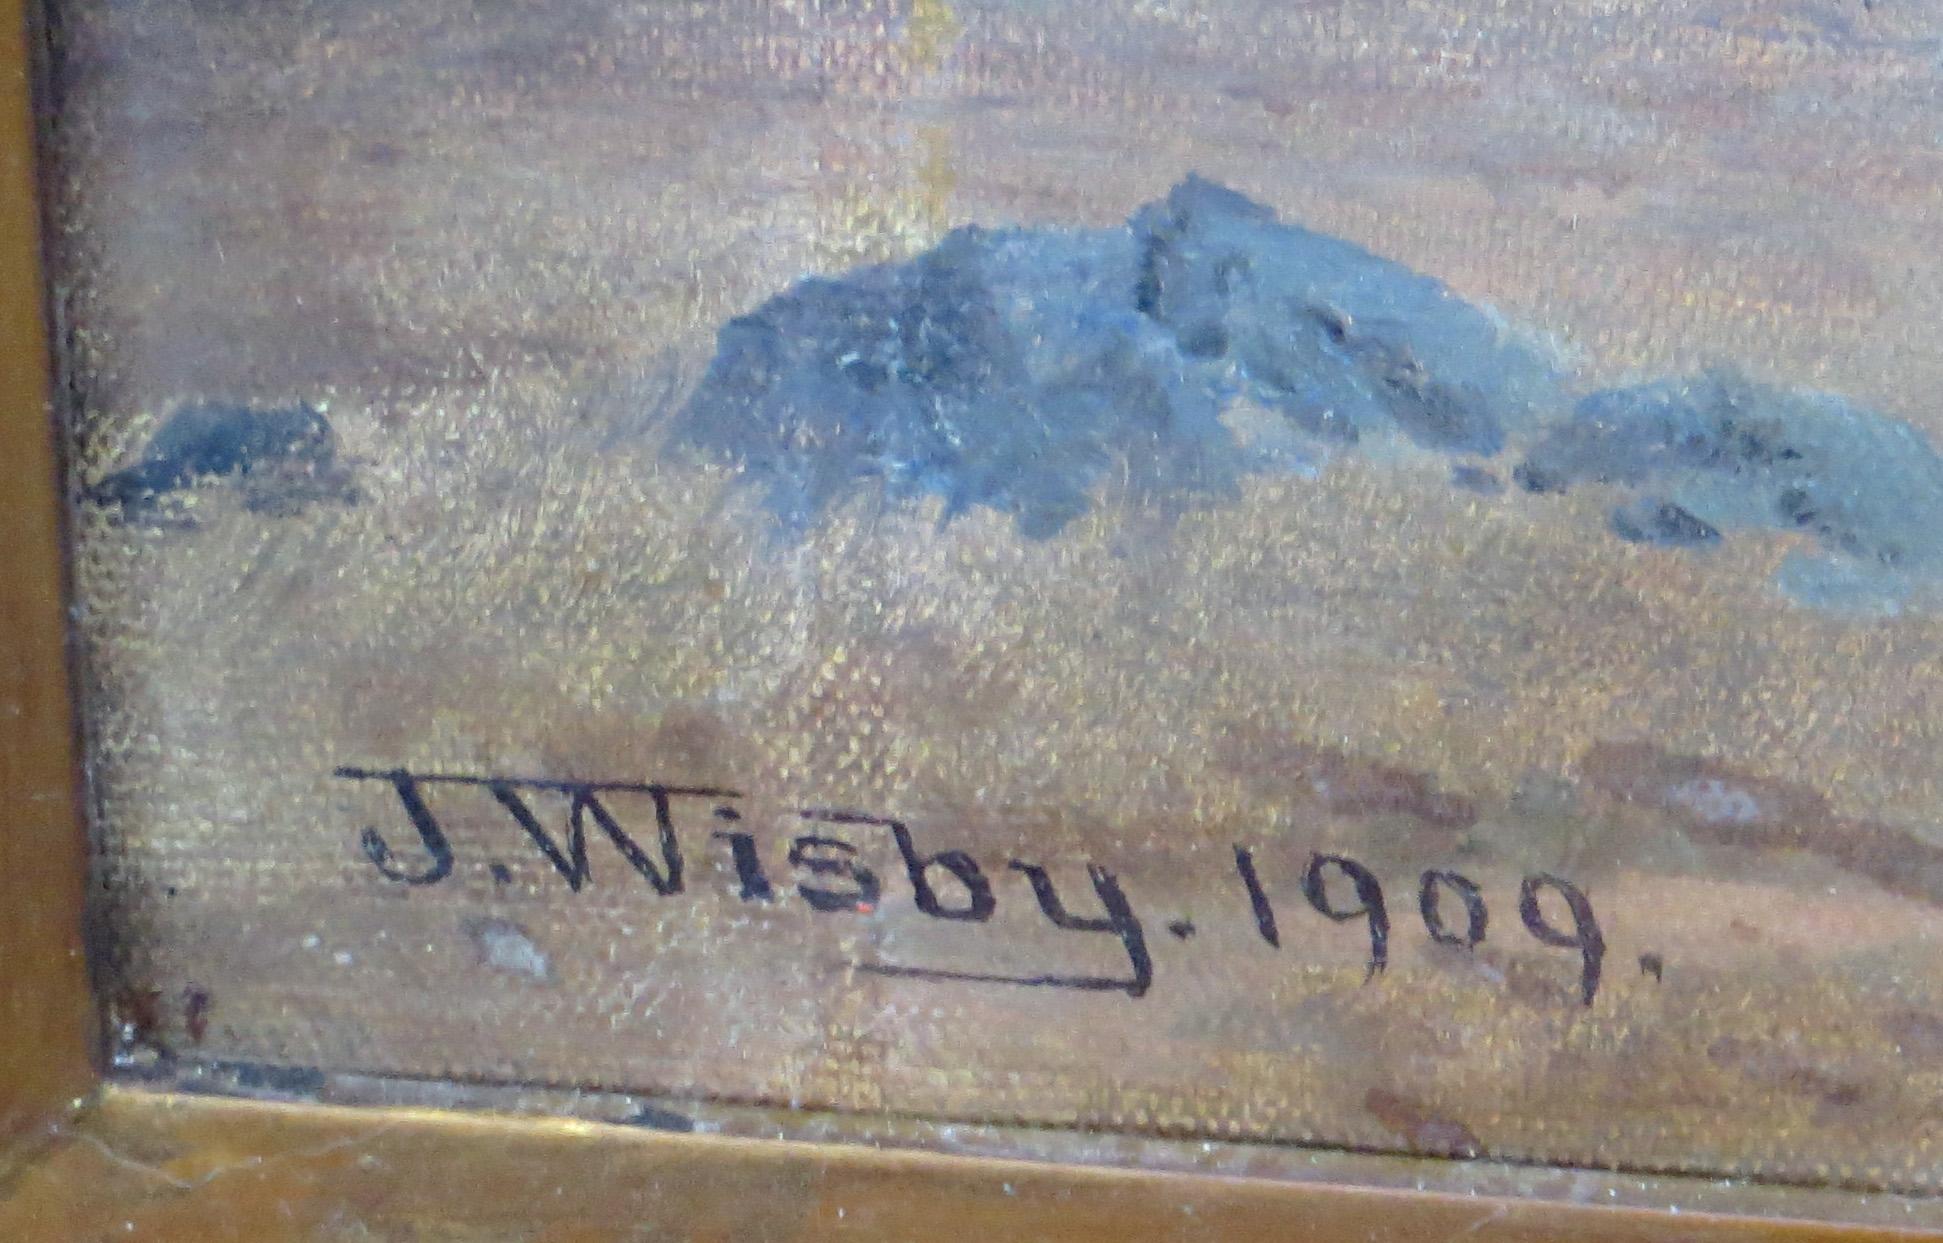 Artistics : Jack Wisby- Américain (1869 - 1940)
Titre : Hidden Valley, San Anselmo, Marin, Californie
Année : 1909
Médium : Huile sur toile
Taille : 20 x 28 pouces. 
Taille encadrée : 30 x 38 pouces
Signature : Signé, daté en bas à gauche, 